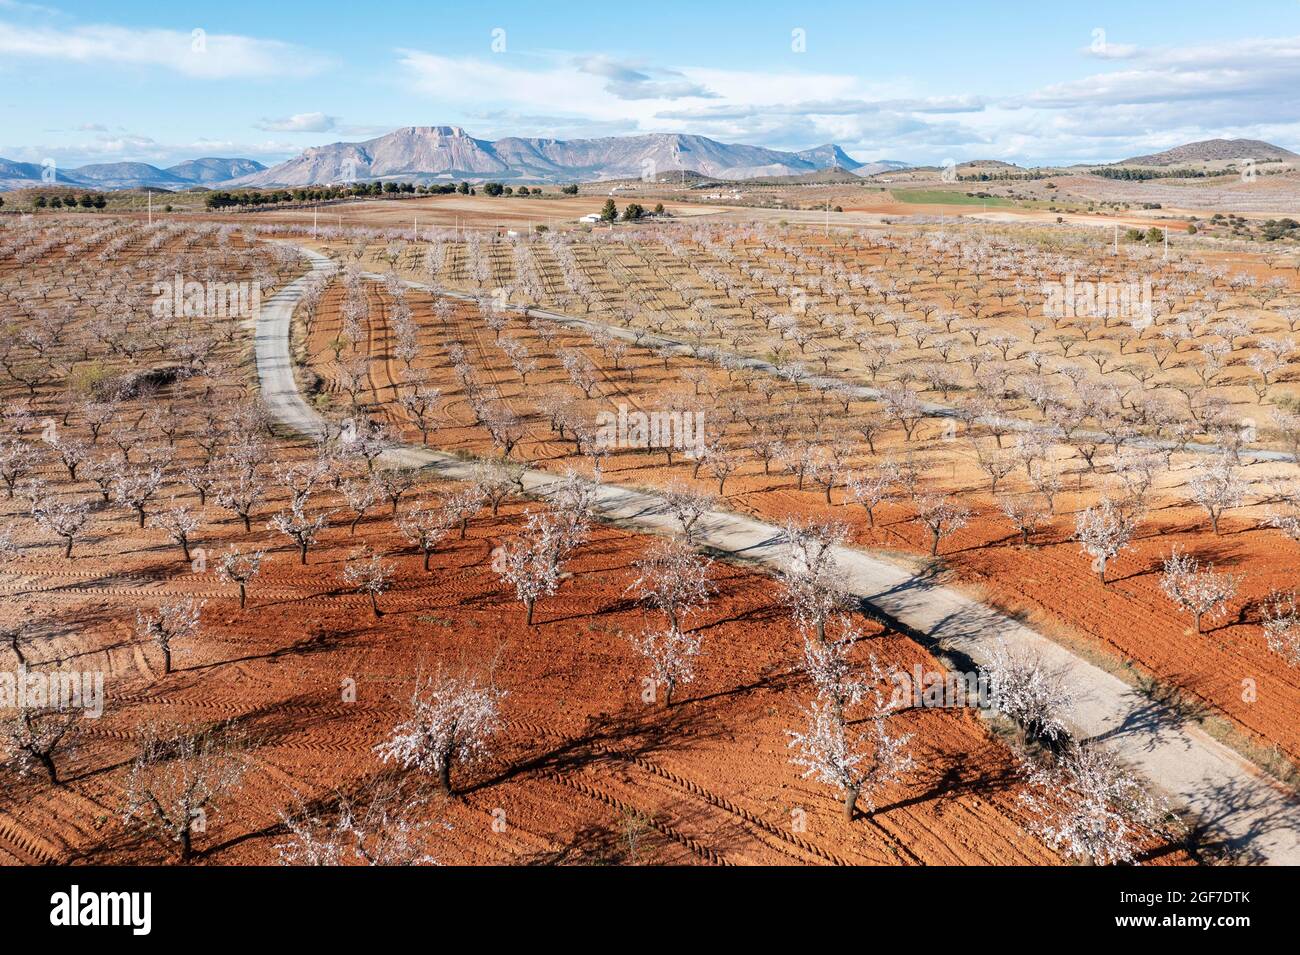 Route de campagne au milieu des amandiers cultivés (Prunus dulcis) en pleine fleur en février, vue aérienne, tir de drone, province d'Almeria, Andalousie, Espagne Banque D'Images